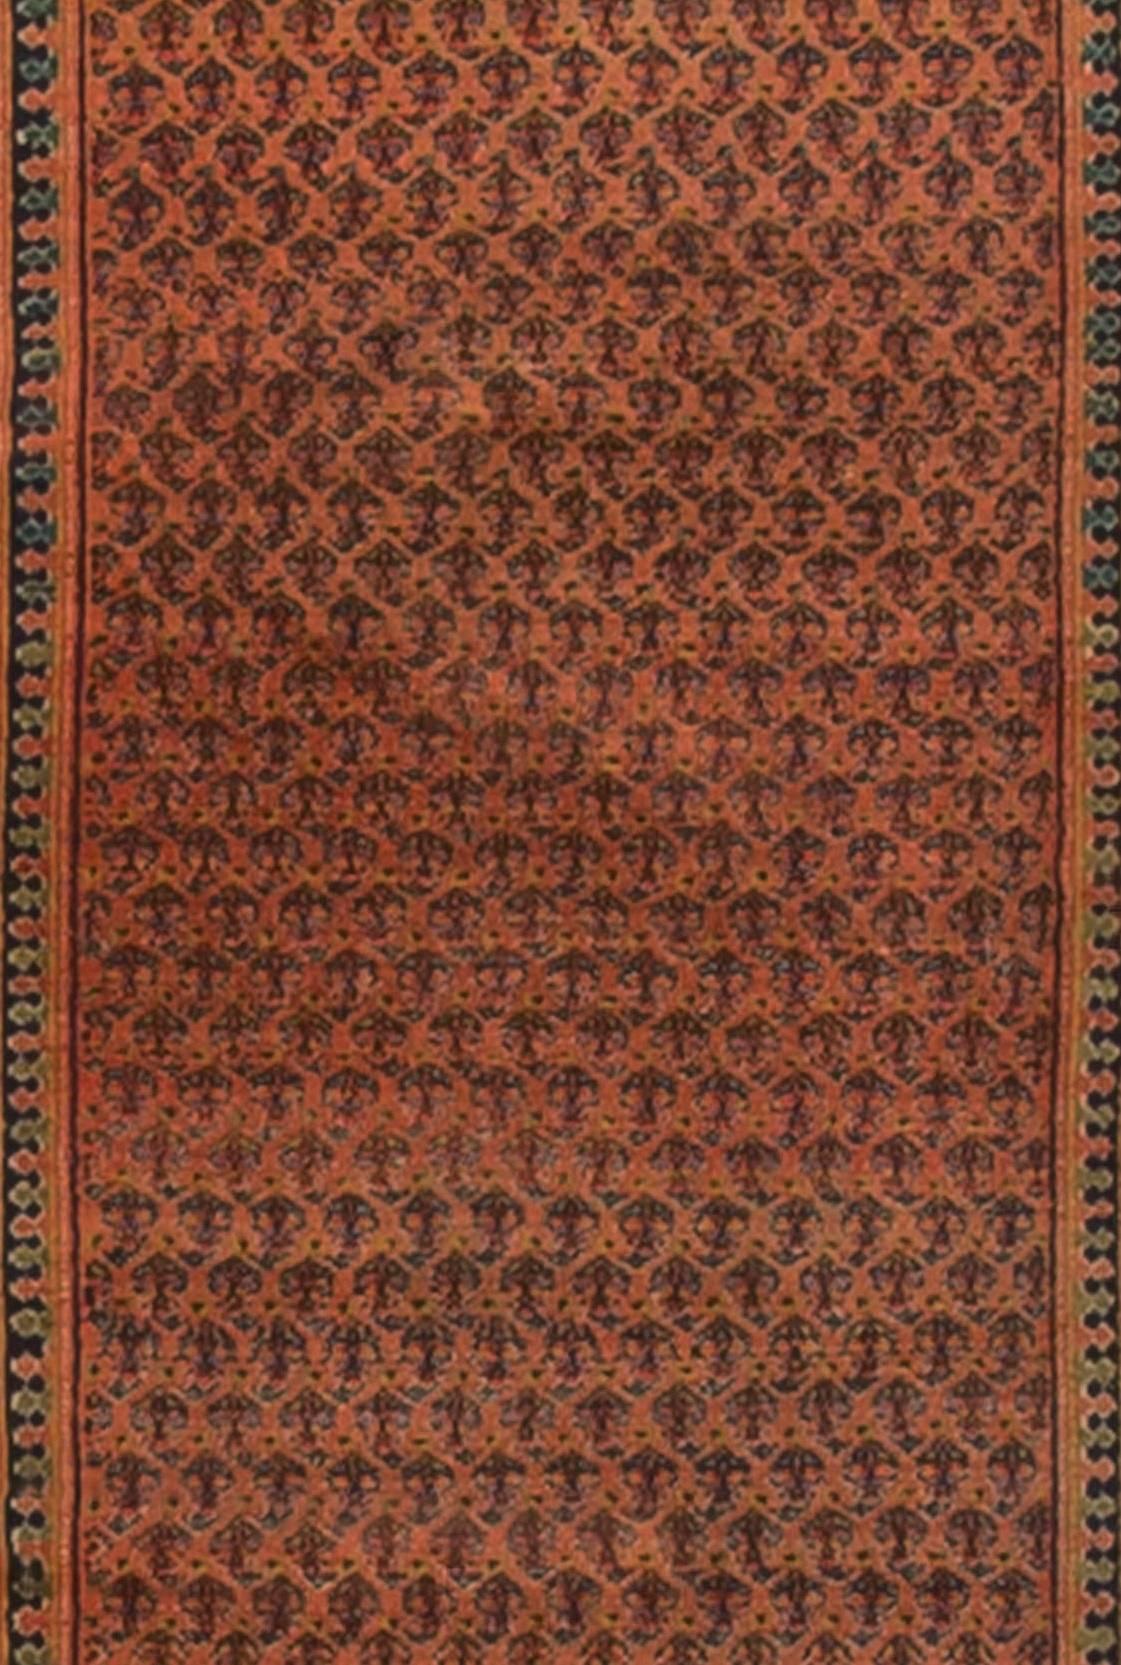 Chemin de table persan vintage tissé à la main, vers 1920. Le champ principal est rempli à ras bord d'un motif paisley sur un fond rouge tendre et entouré de multiples bordures de garde. Dans une couleur foncée sur un dossier plus clair.
 